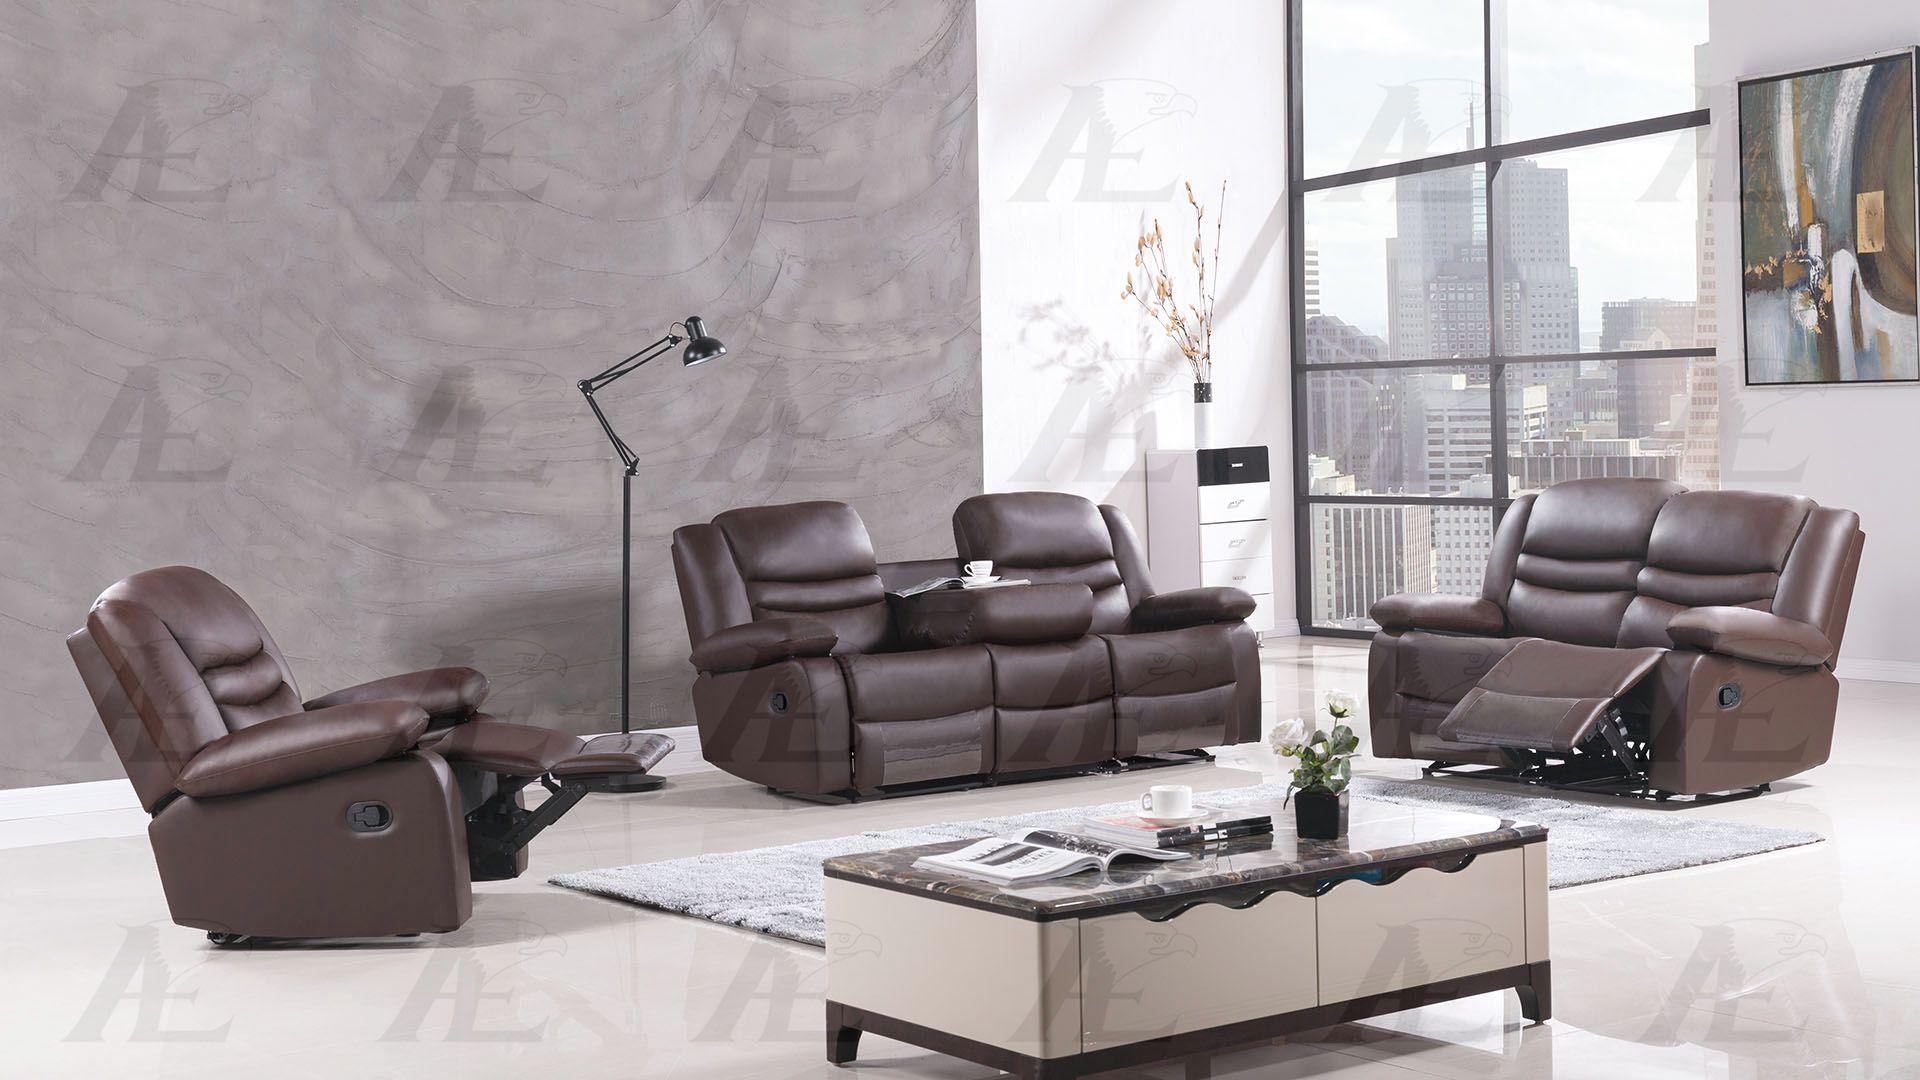 

    
American Eagle Furniture AE-D823-DB Sofa Dark Brown AE-D823-DB-Sofa
